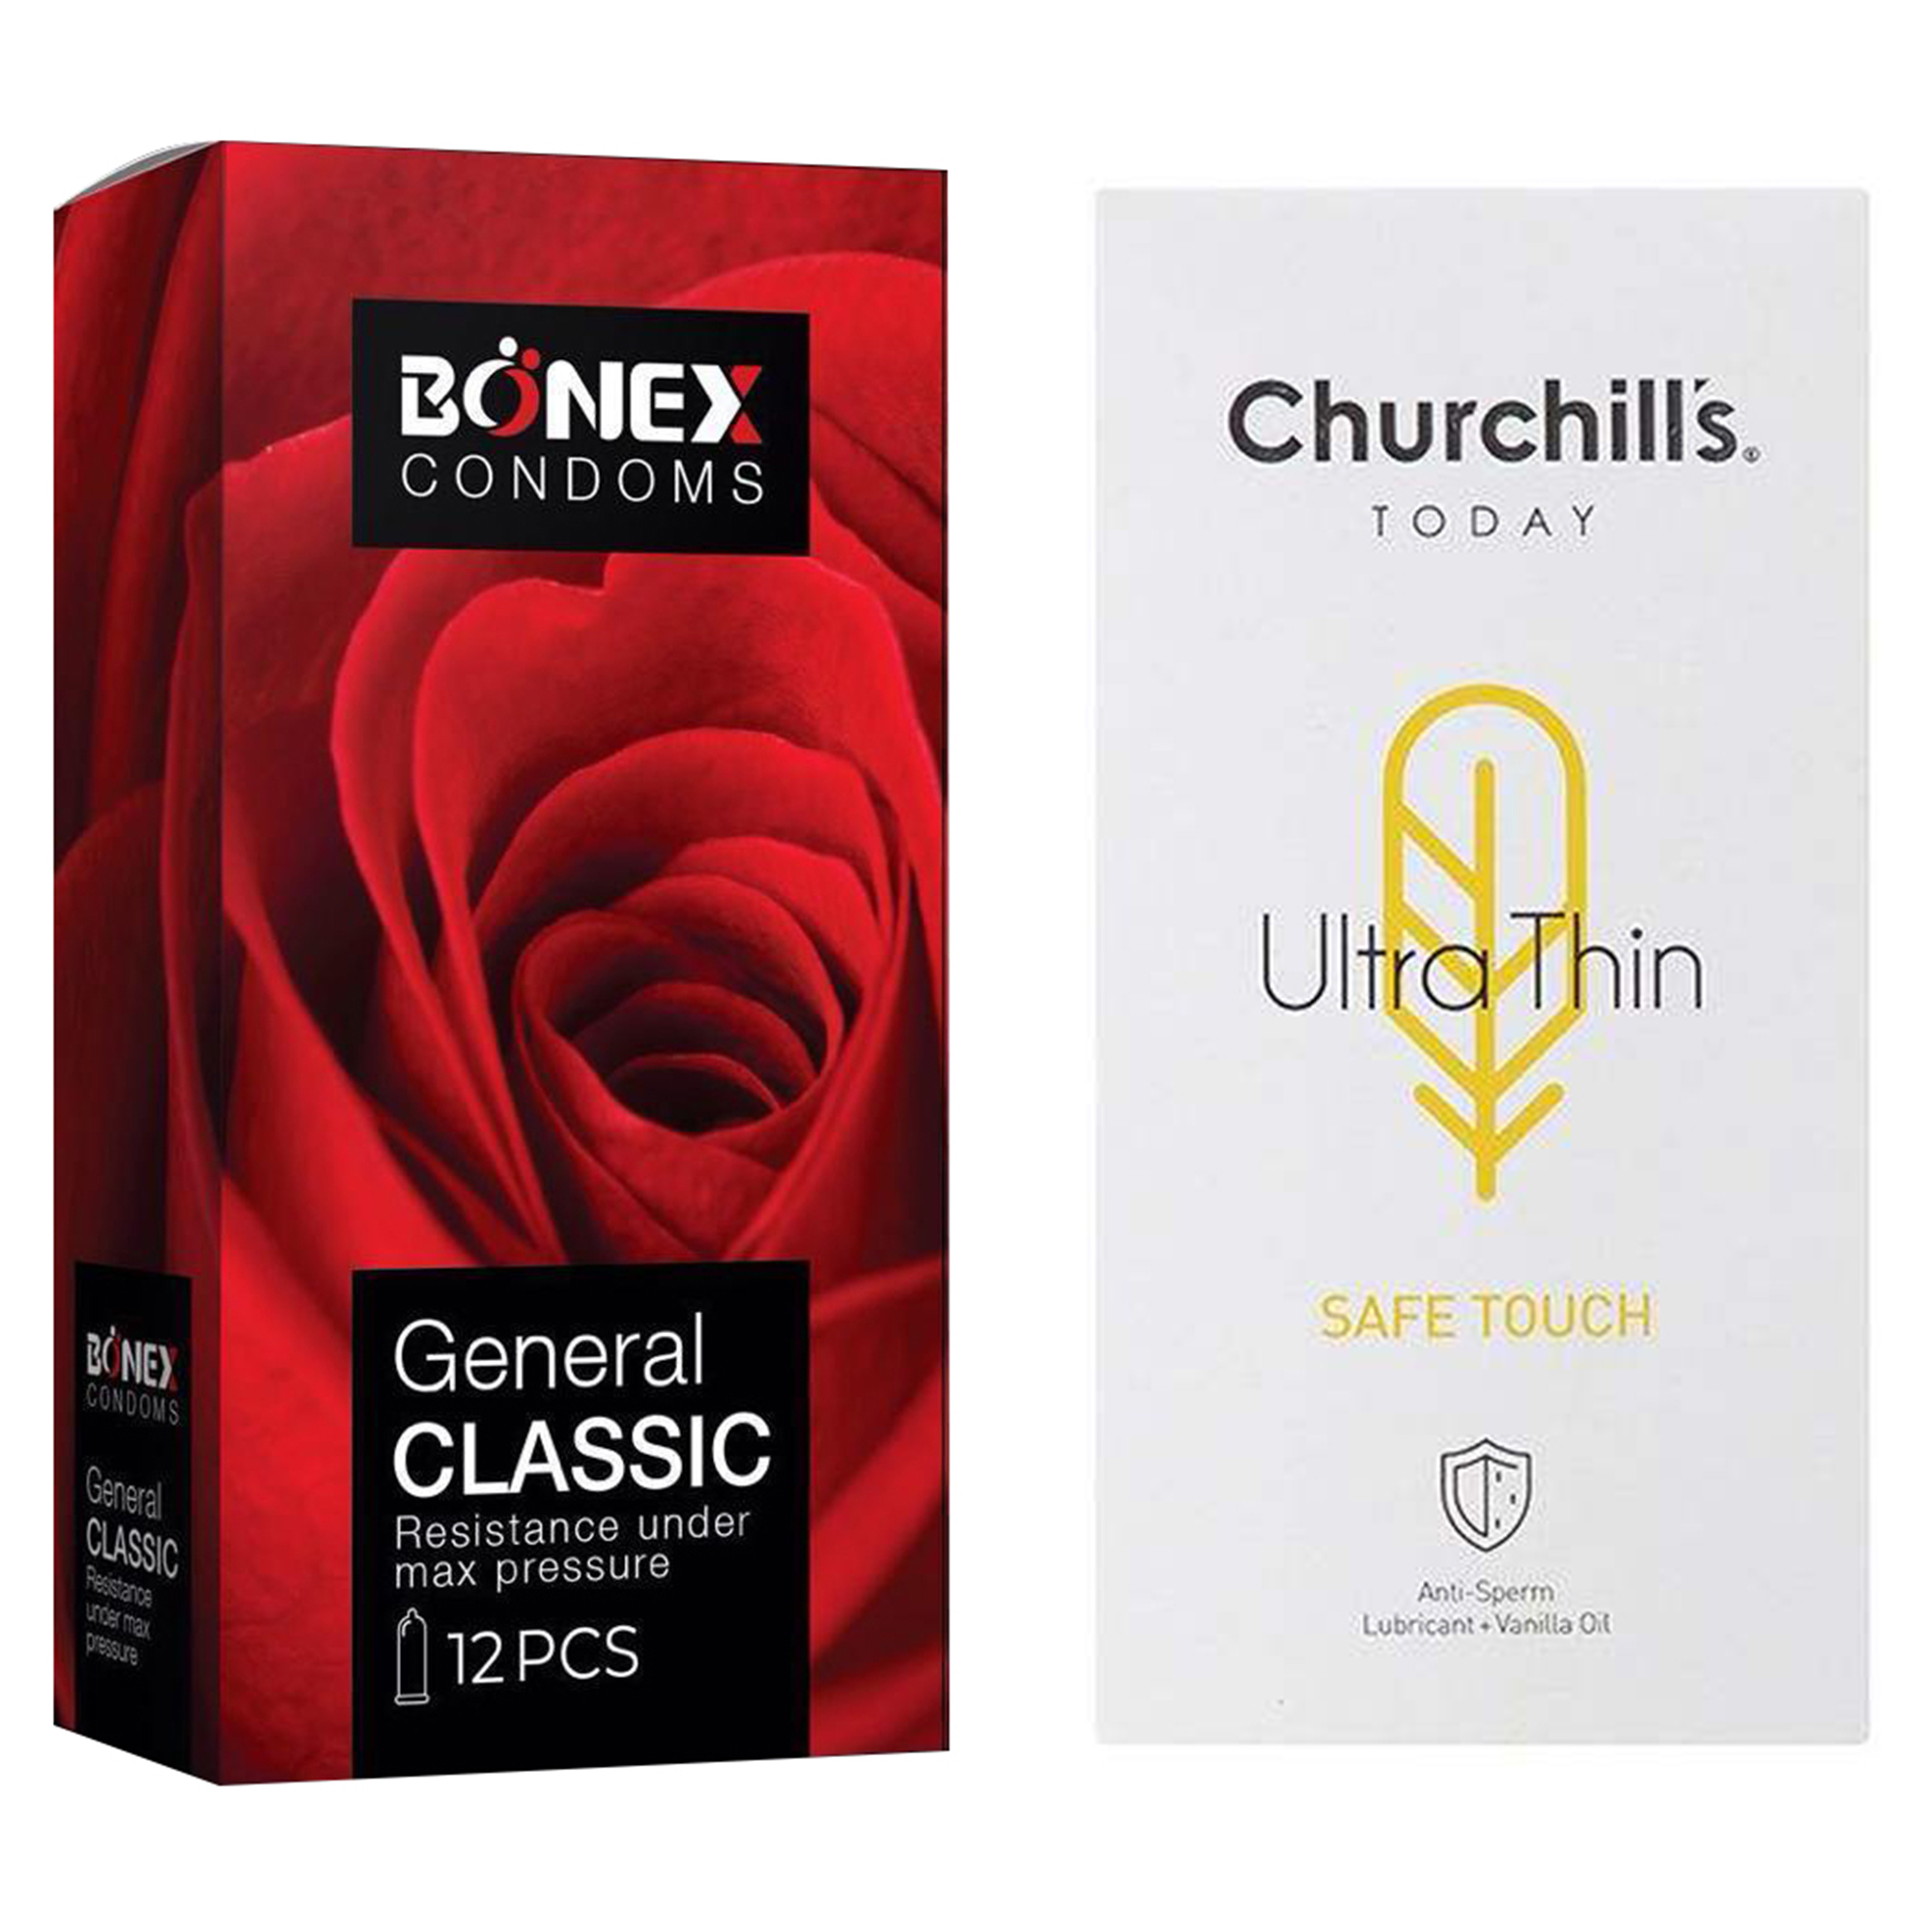 کاندوم چرچیلز مدل Safe Touch بسته 12 عددی به همراه کاندوم بونکس مدل General Classic بسته 12 عددی 